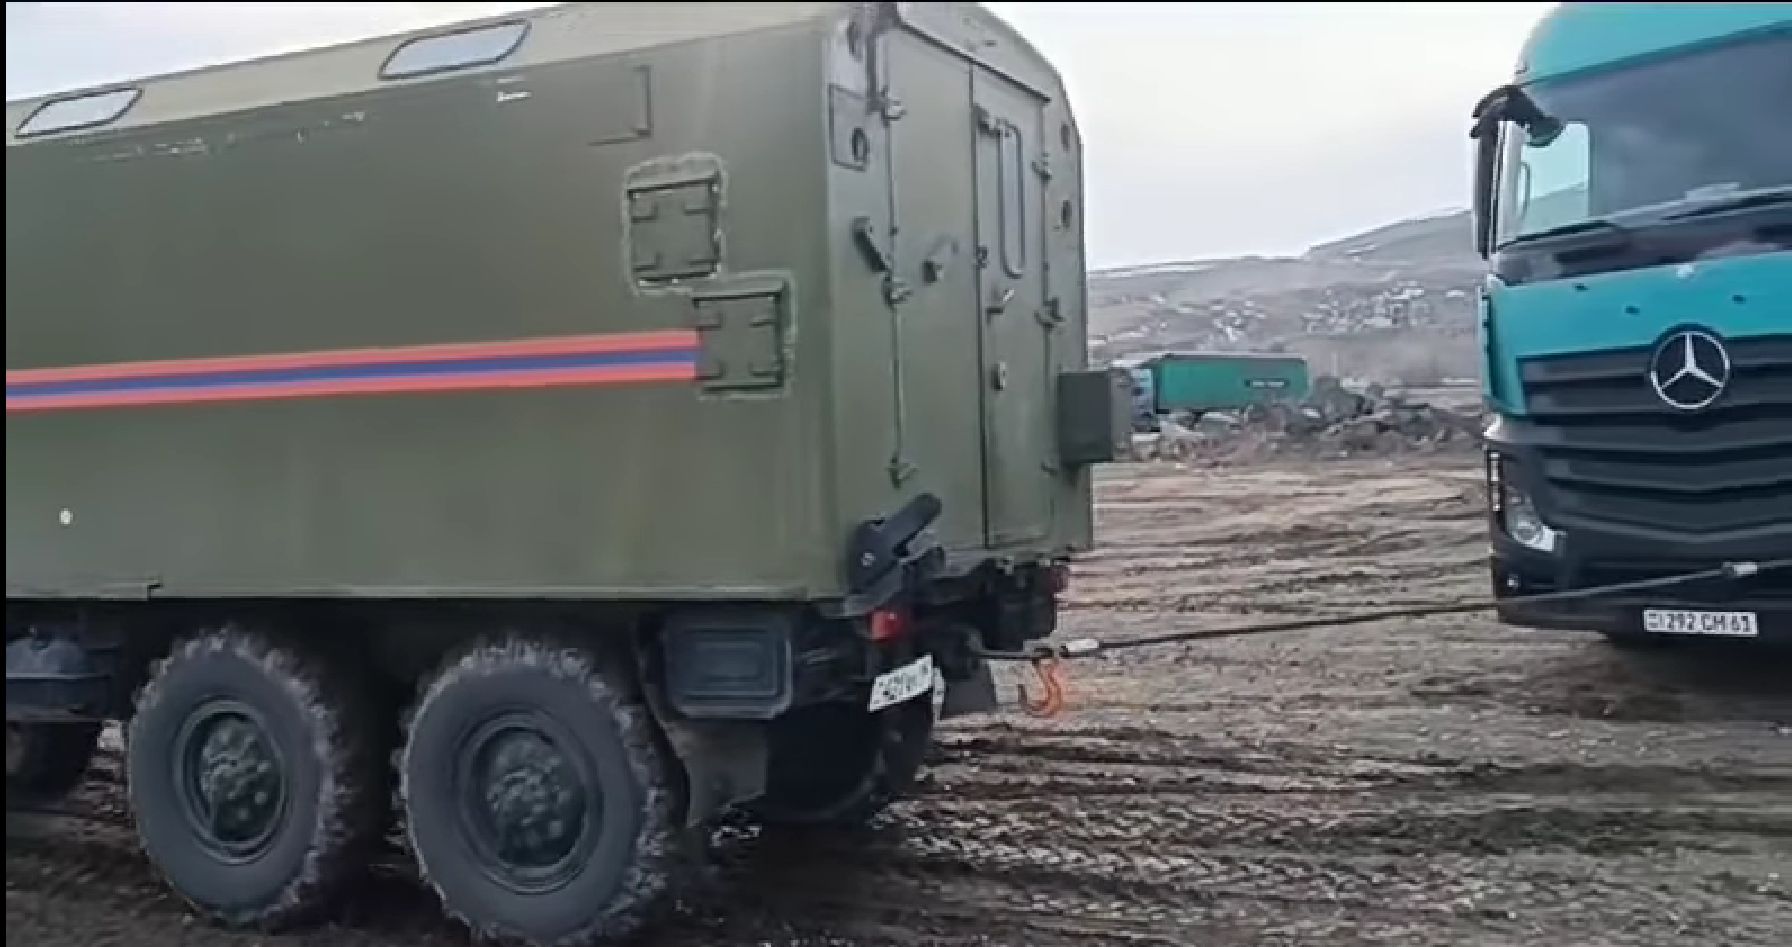 Փրկարարներն արգելափակումից դուրս են բերել երկու բեռնատար (տեսանյութ)